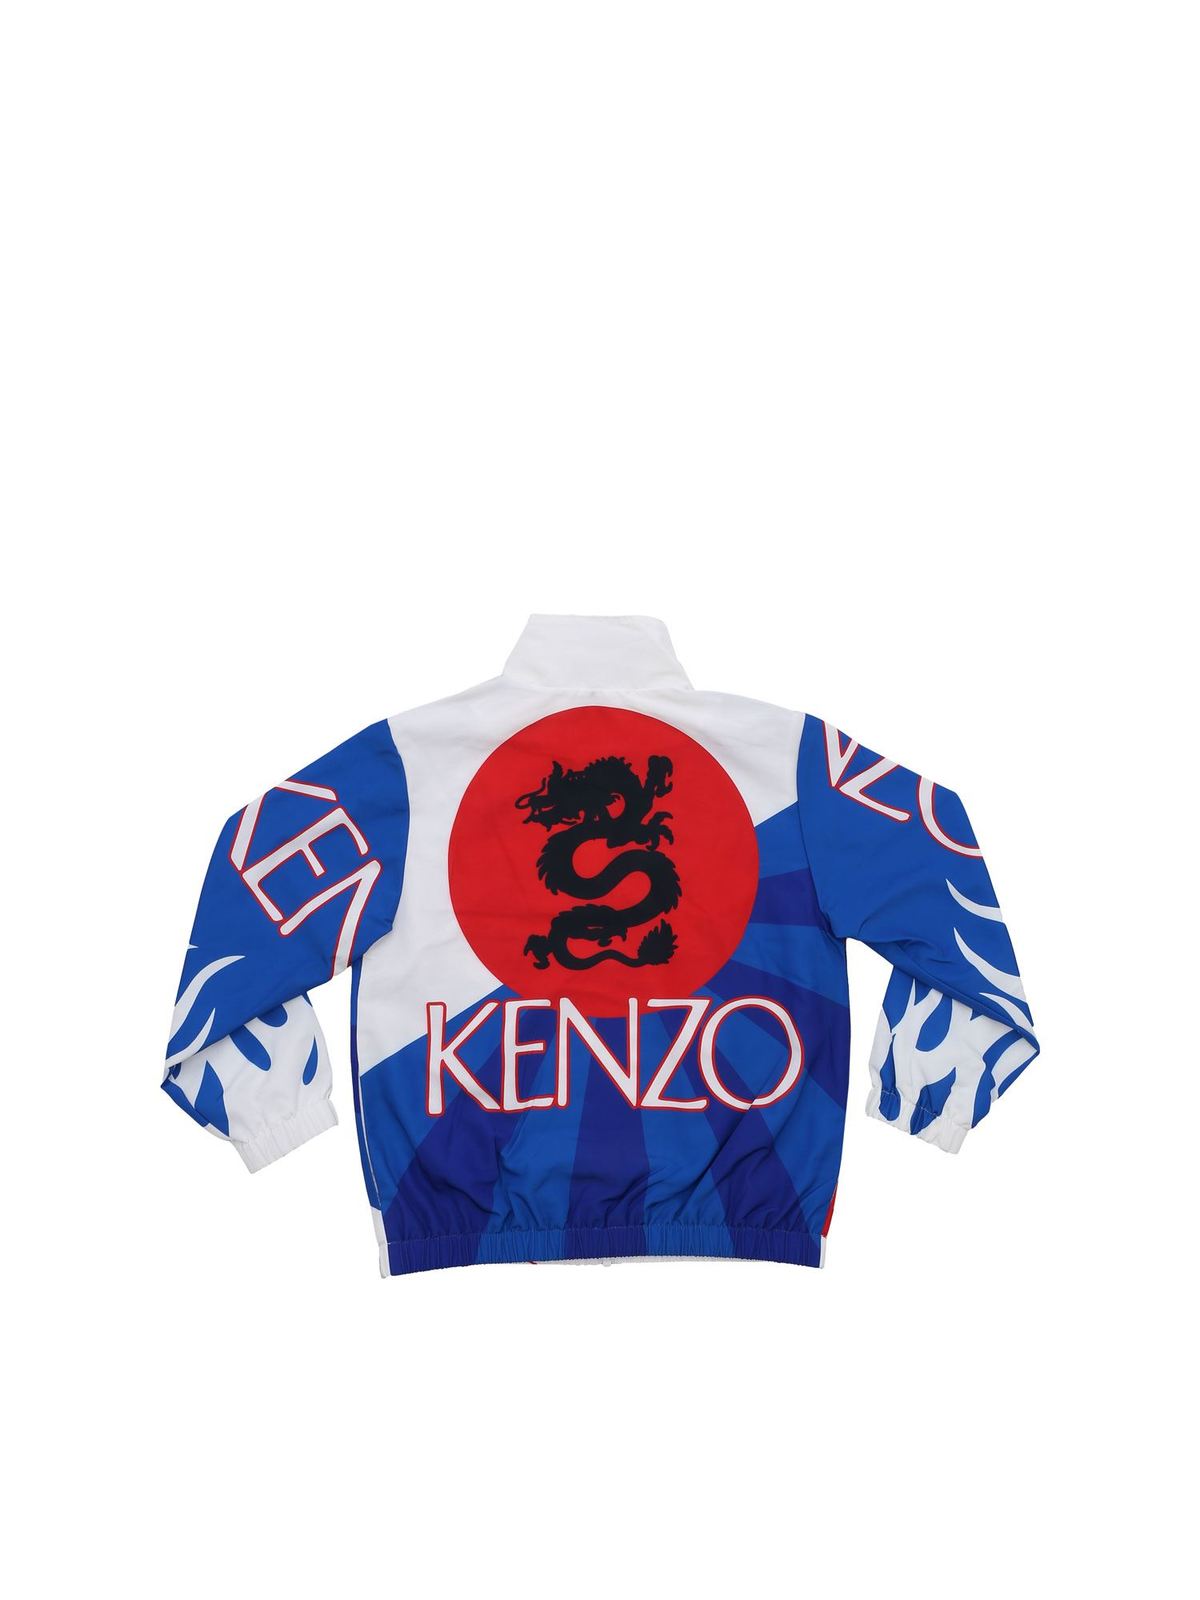 kenzo cost